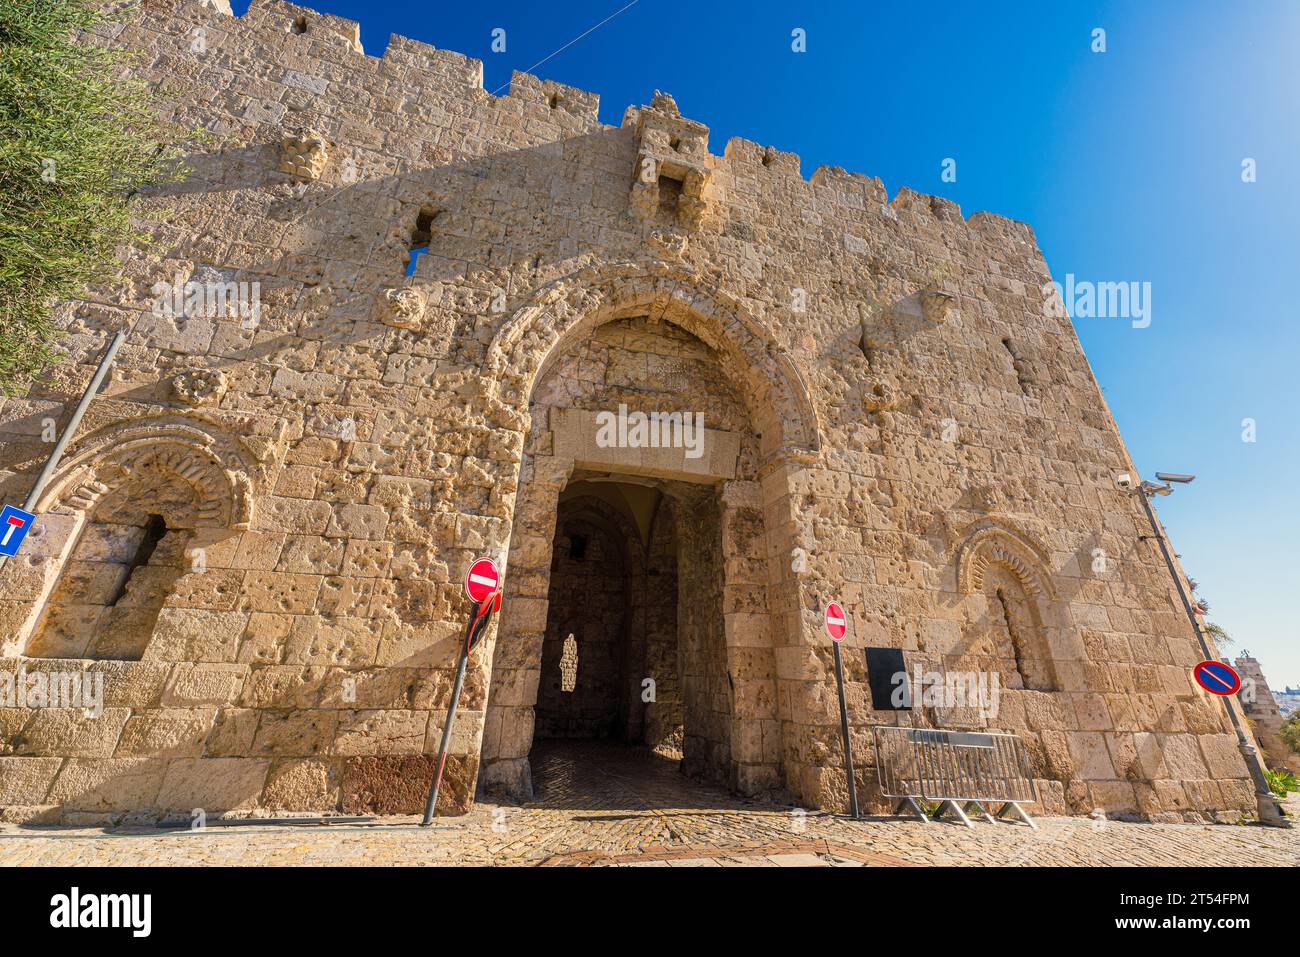 Vue de la porte de Sion, une des portes de la vieille ville de Jérusalem, Israël Banque D'Images